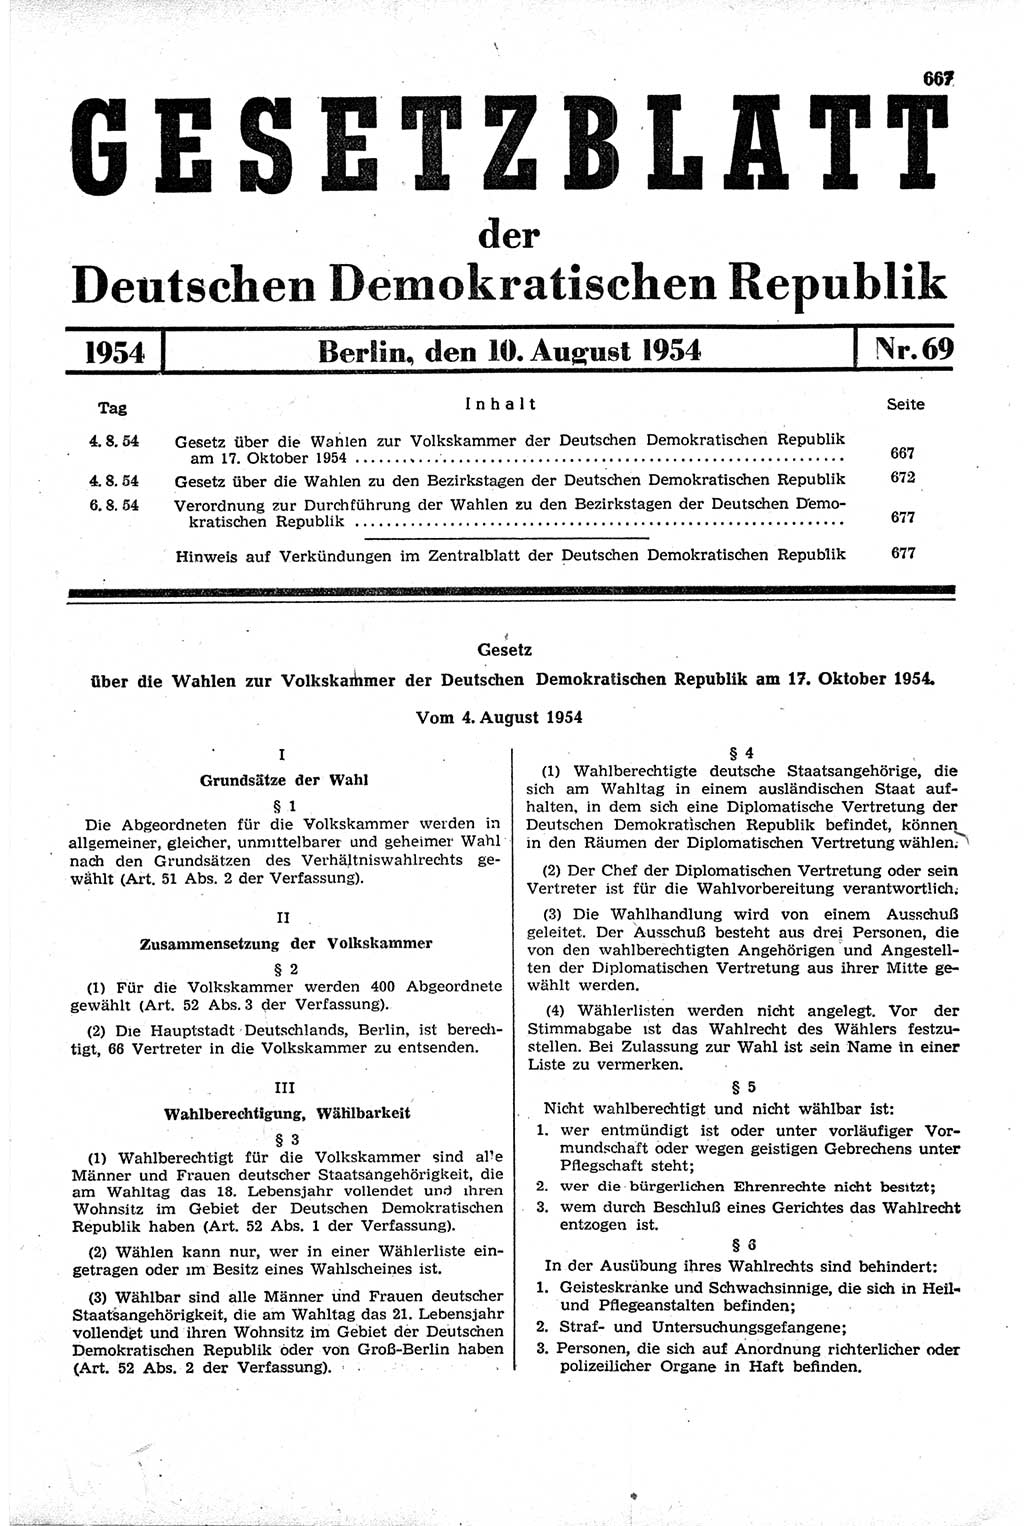 Gesetzblatt (GBl.) der Deutschen Demokratischen Republik (DDR) 1954, Seite 667 (GBl. DDR 1954, S. 667)